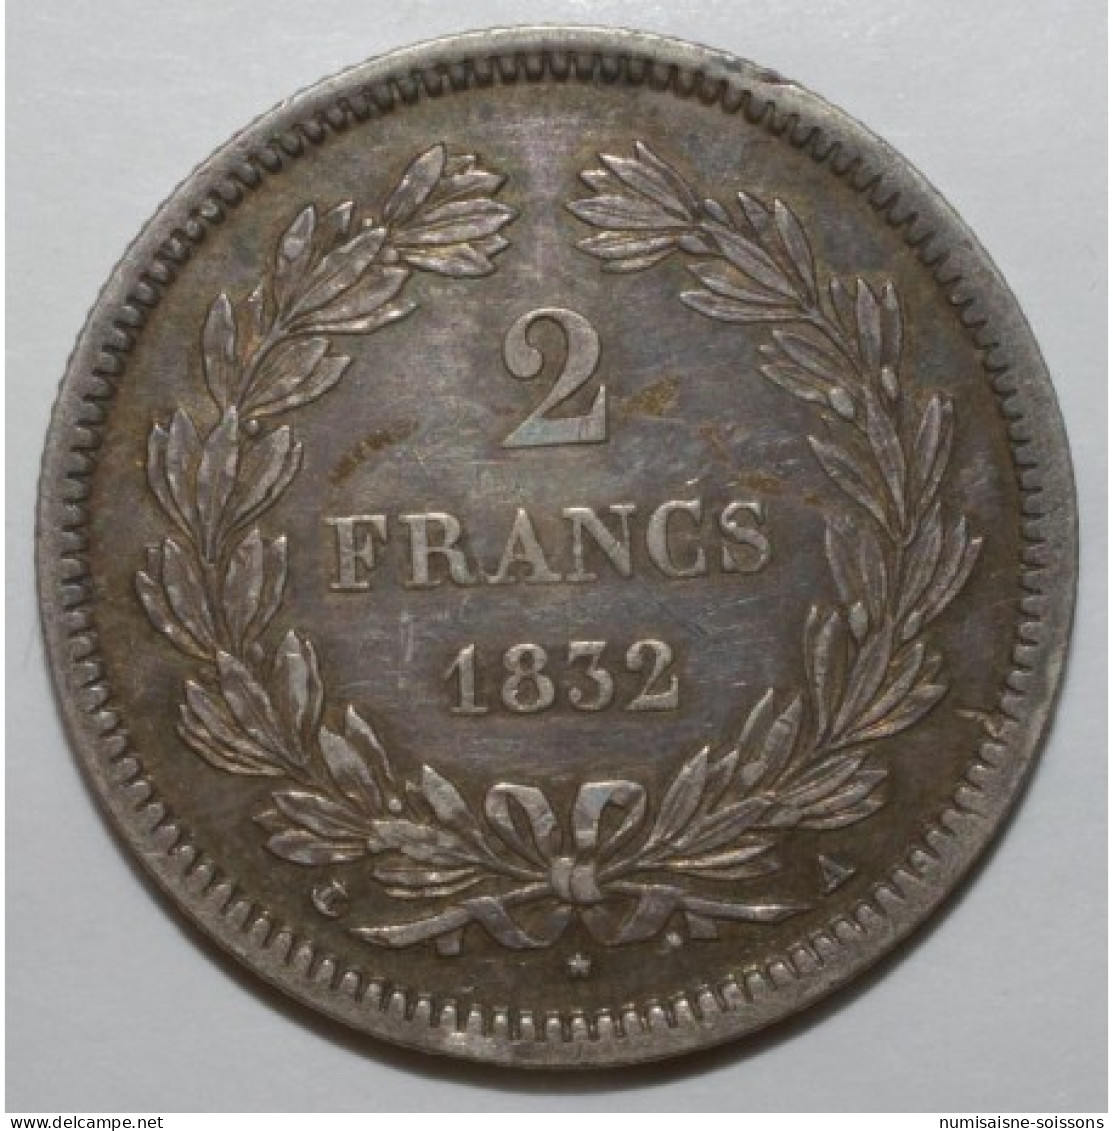 GADOURY 520 - 2 FRANCS 1832 A - Paris - TYPE LOUIS PHILIPPE 1er - KM 743 - TTB+ - 2 Francs